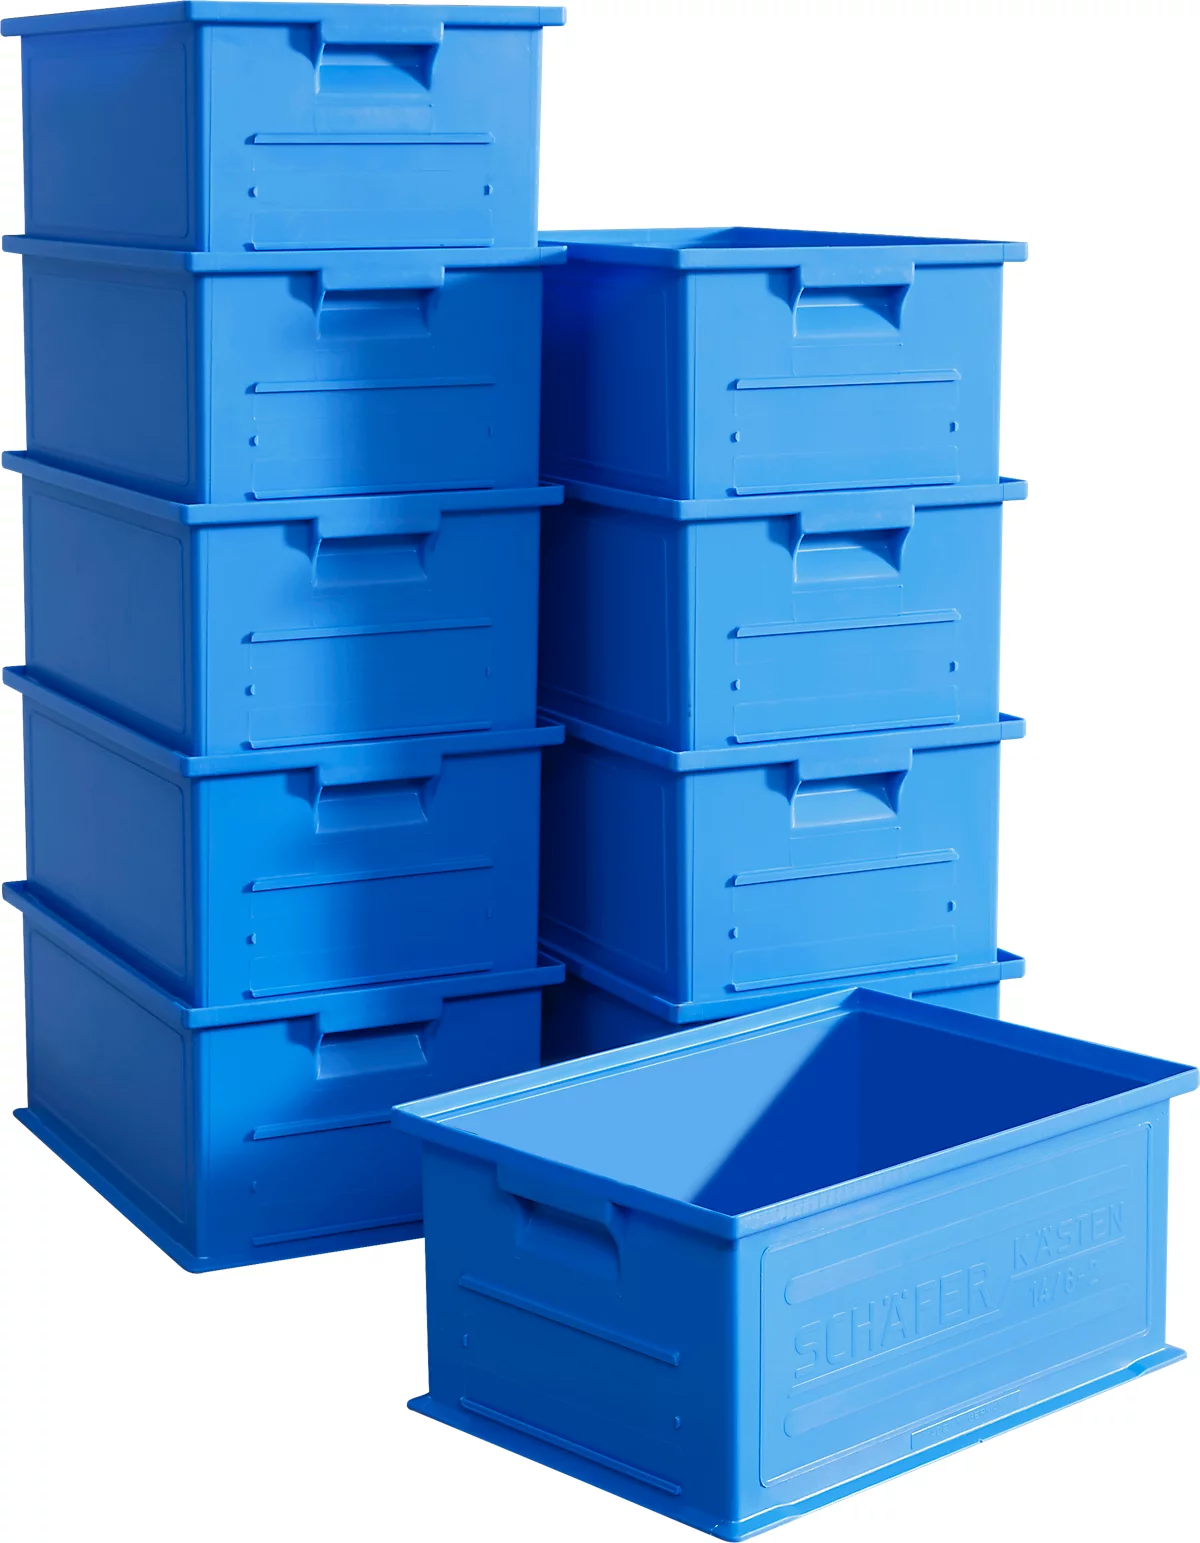 Caja apilable SSI Schäfer Serie 14/6-2, volumen 21 l, hasta 30 kg, asas encastradas y portaetiquetas, polipropileno, azul, 10 unidades